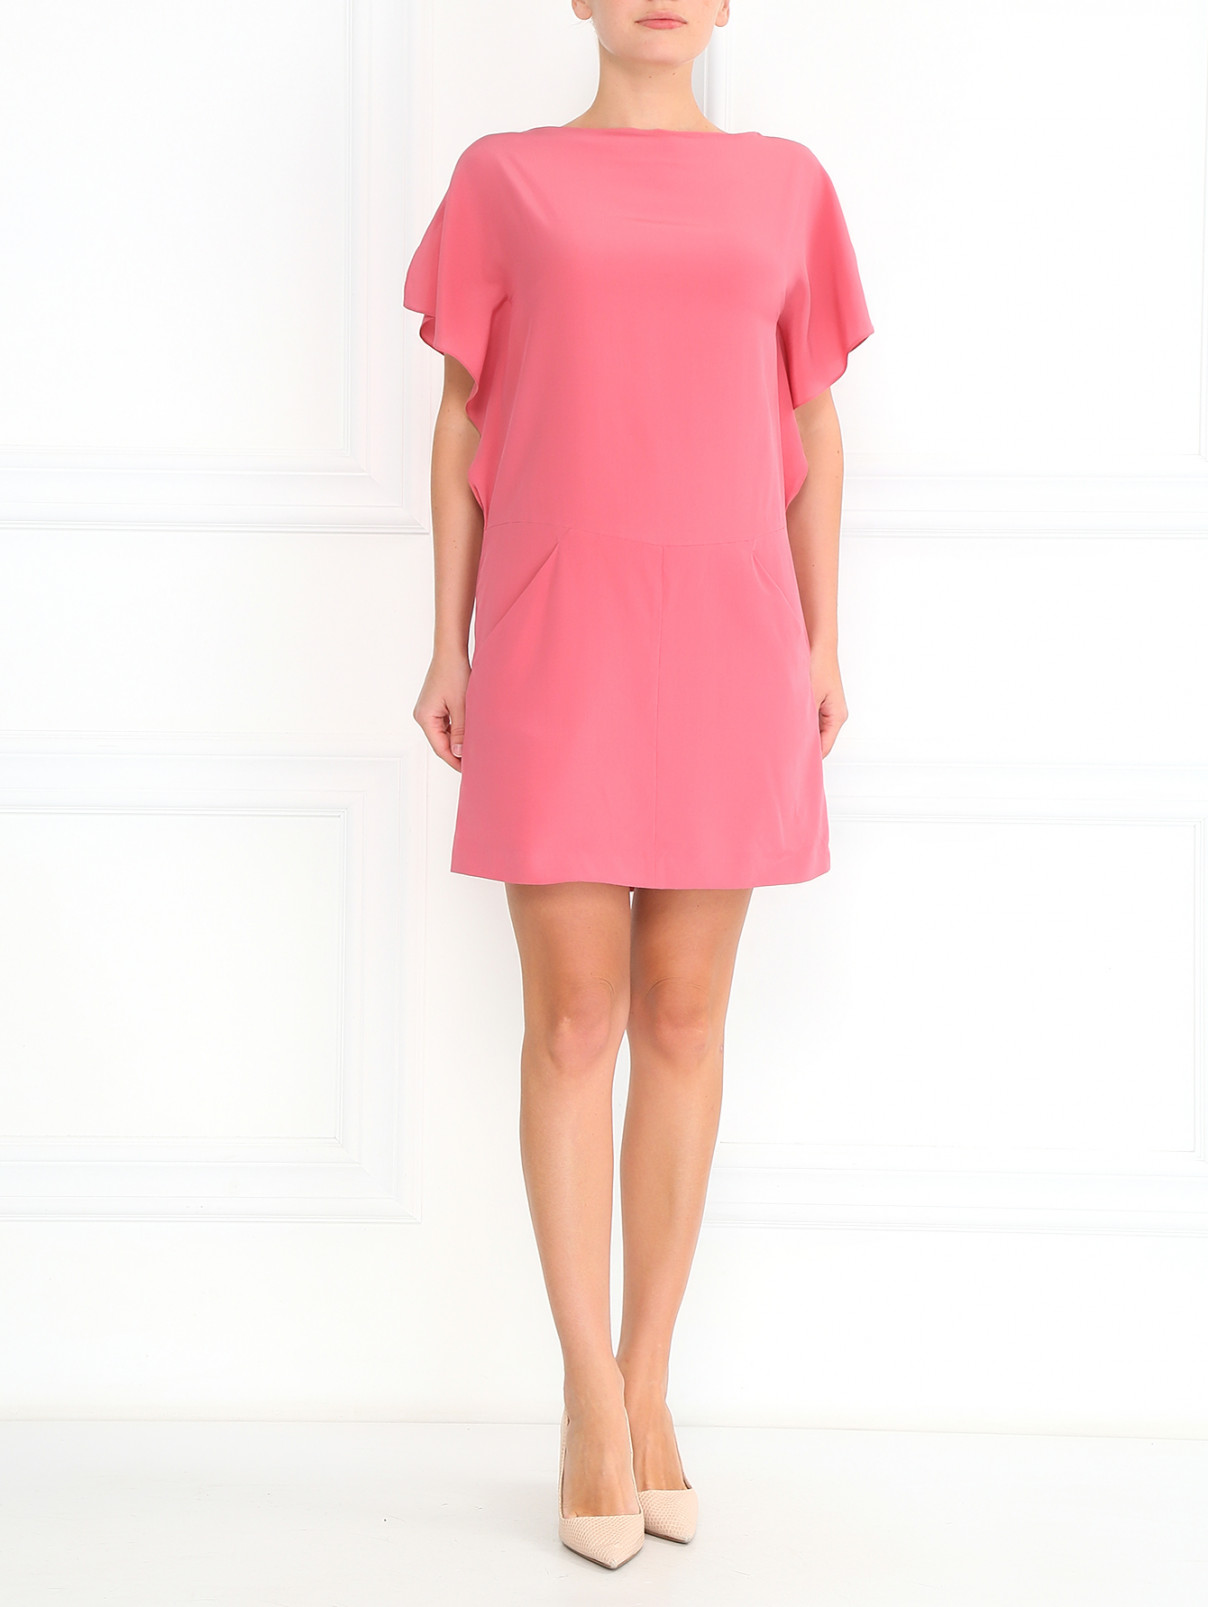 Шелковое платье свободного кроя Cacharel  –  Модель Общий вид  – Цвет:  Розовый